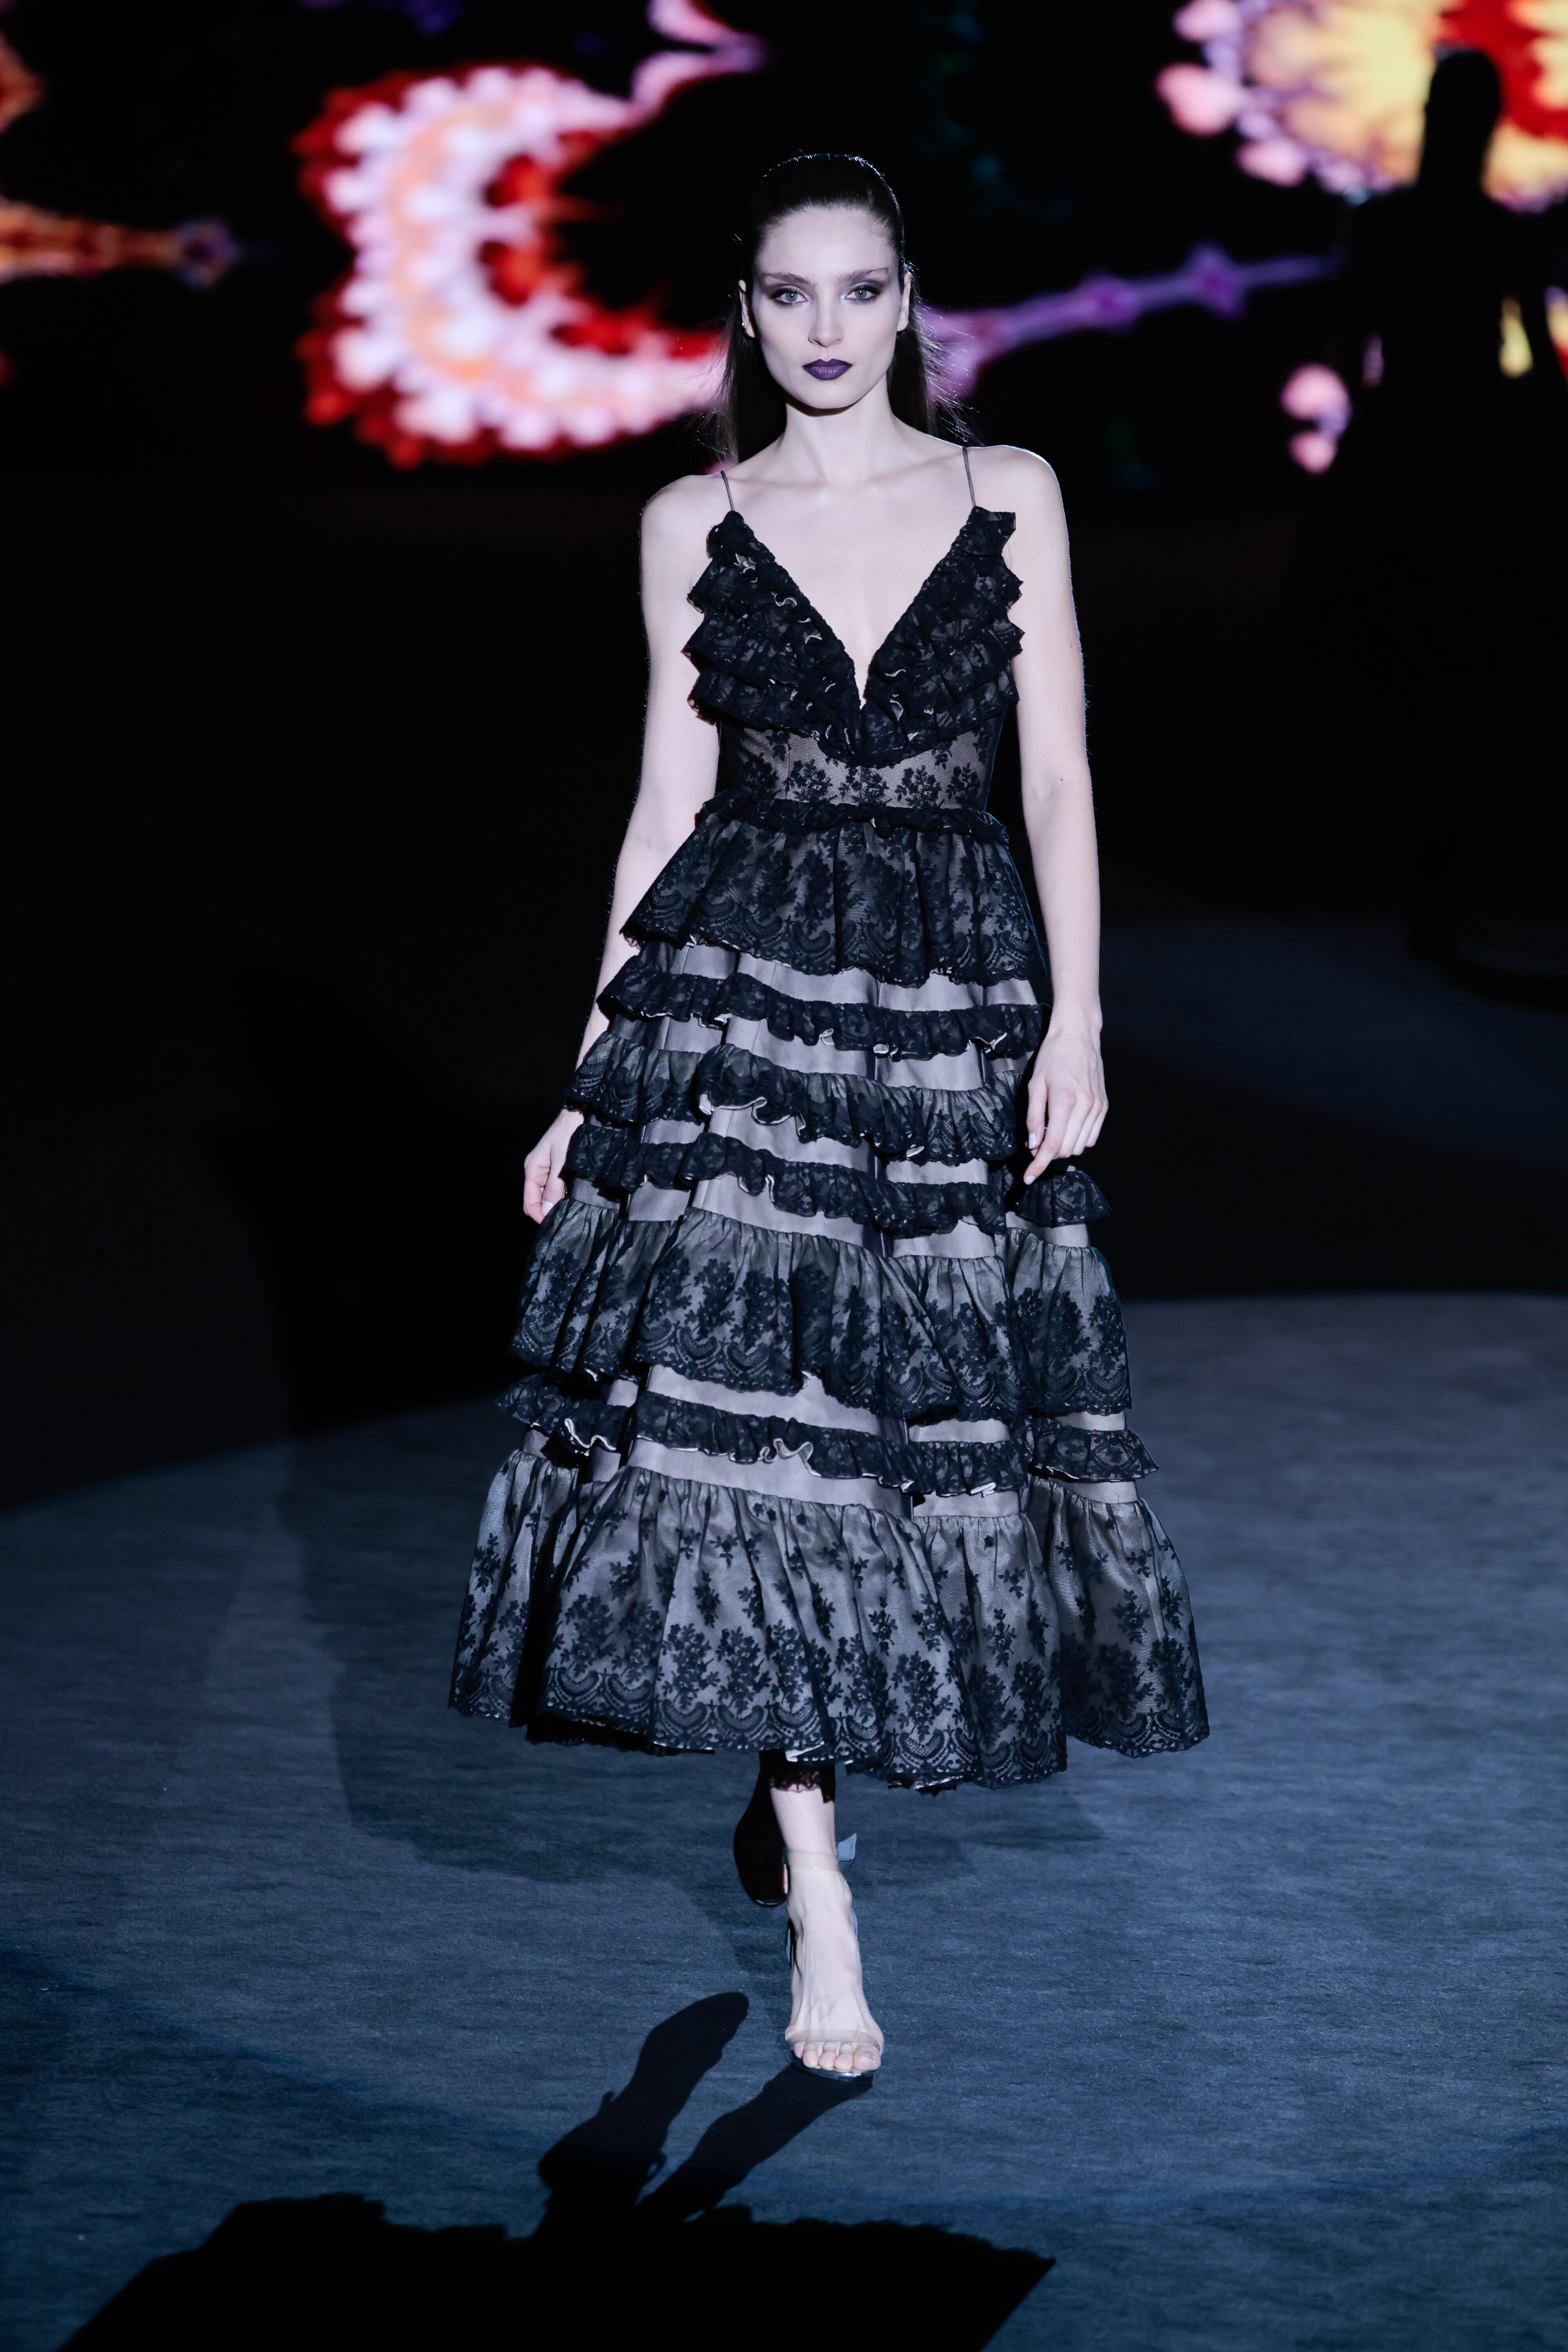 Vestido negro de inspiración goyesca de la colección otoño/invierno 23/24 de Hannibal Laguna | foto: Gtres